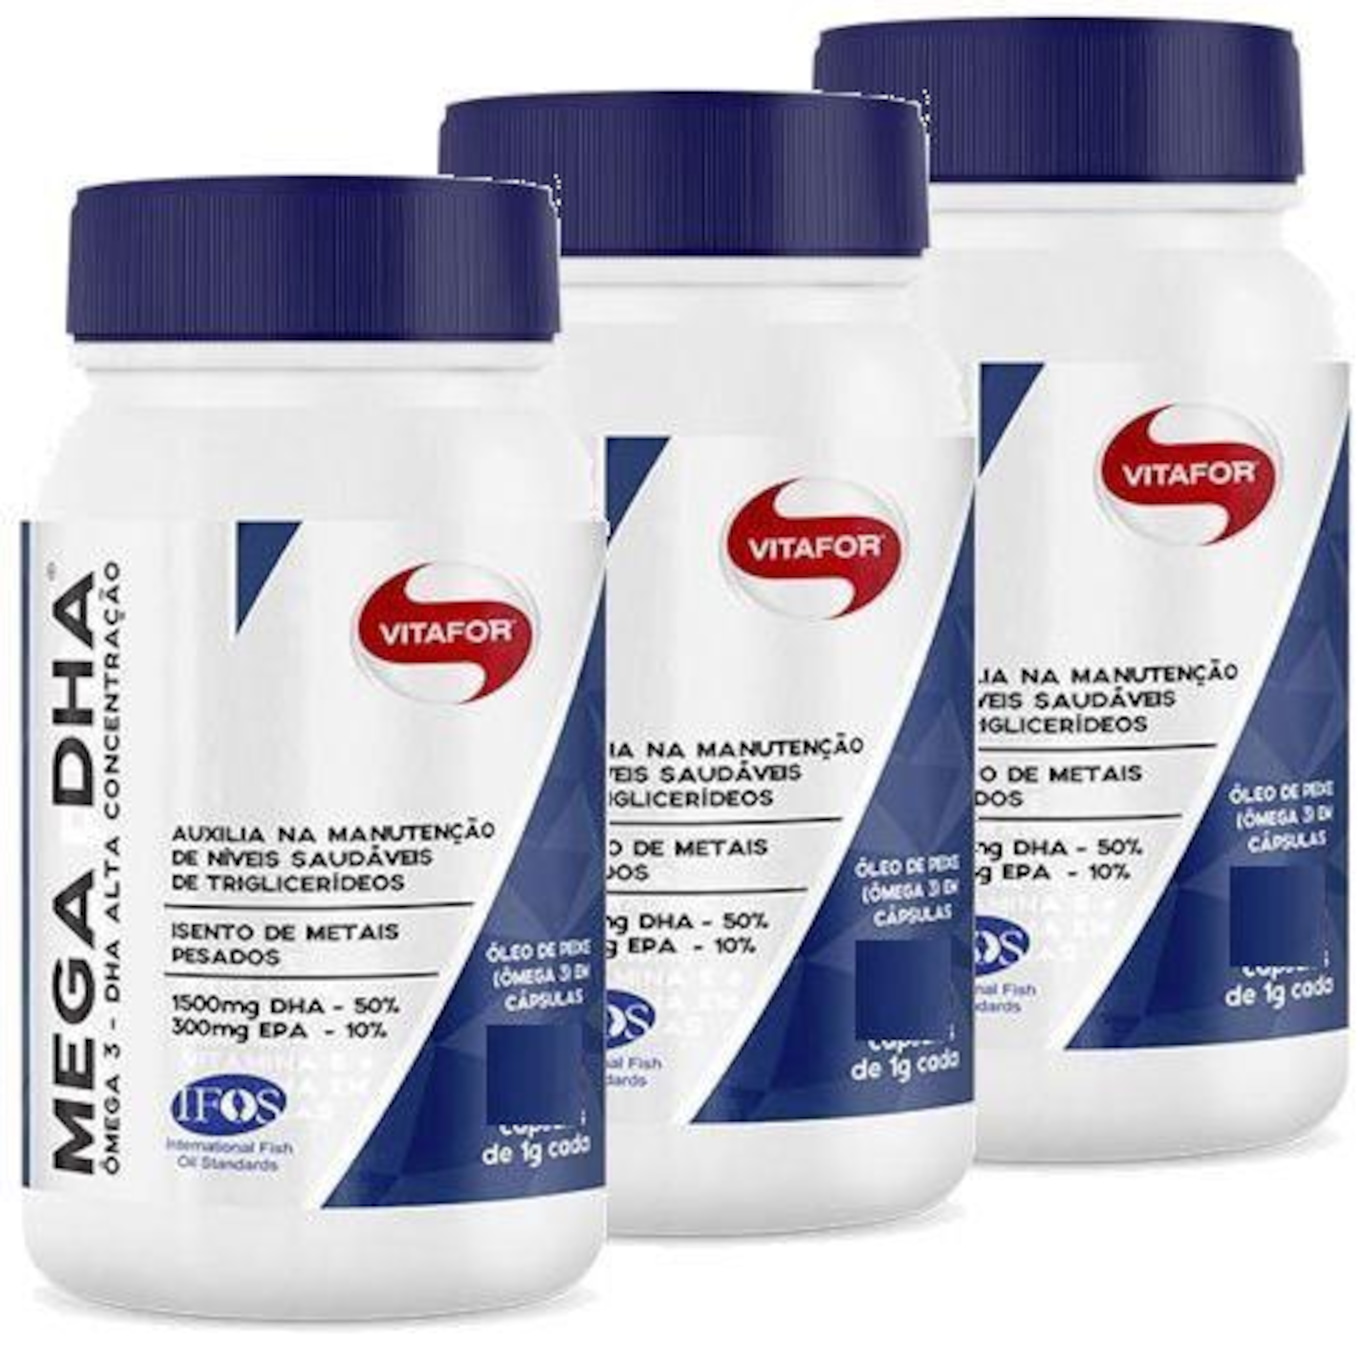 Mega DHA 1500mg 60 Cápsulas - Vitafor